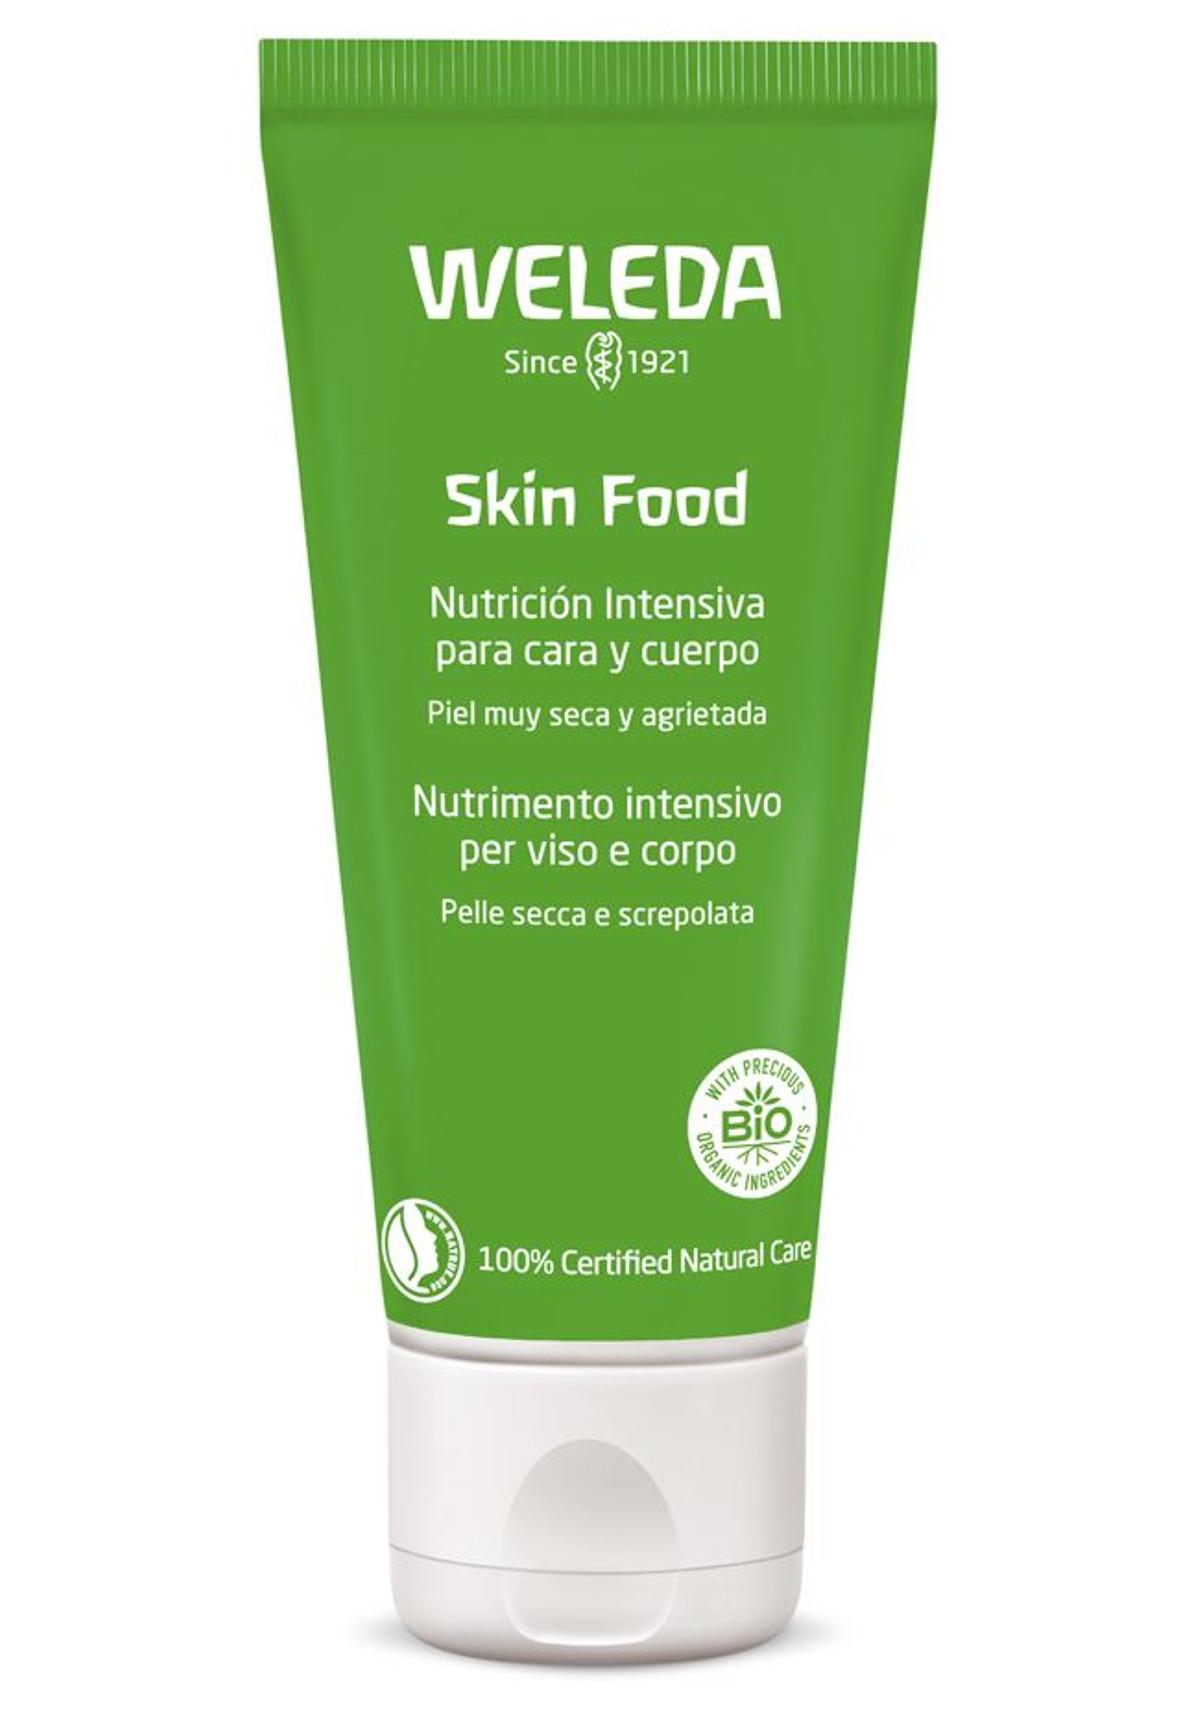 Skin Food nutrición intensiva de Weleda